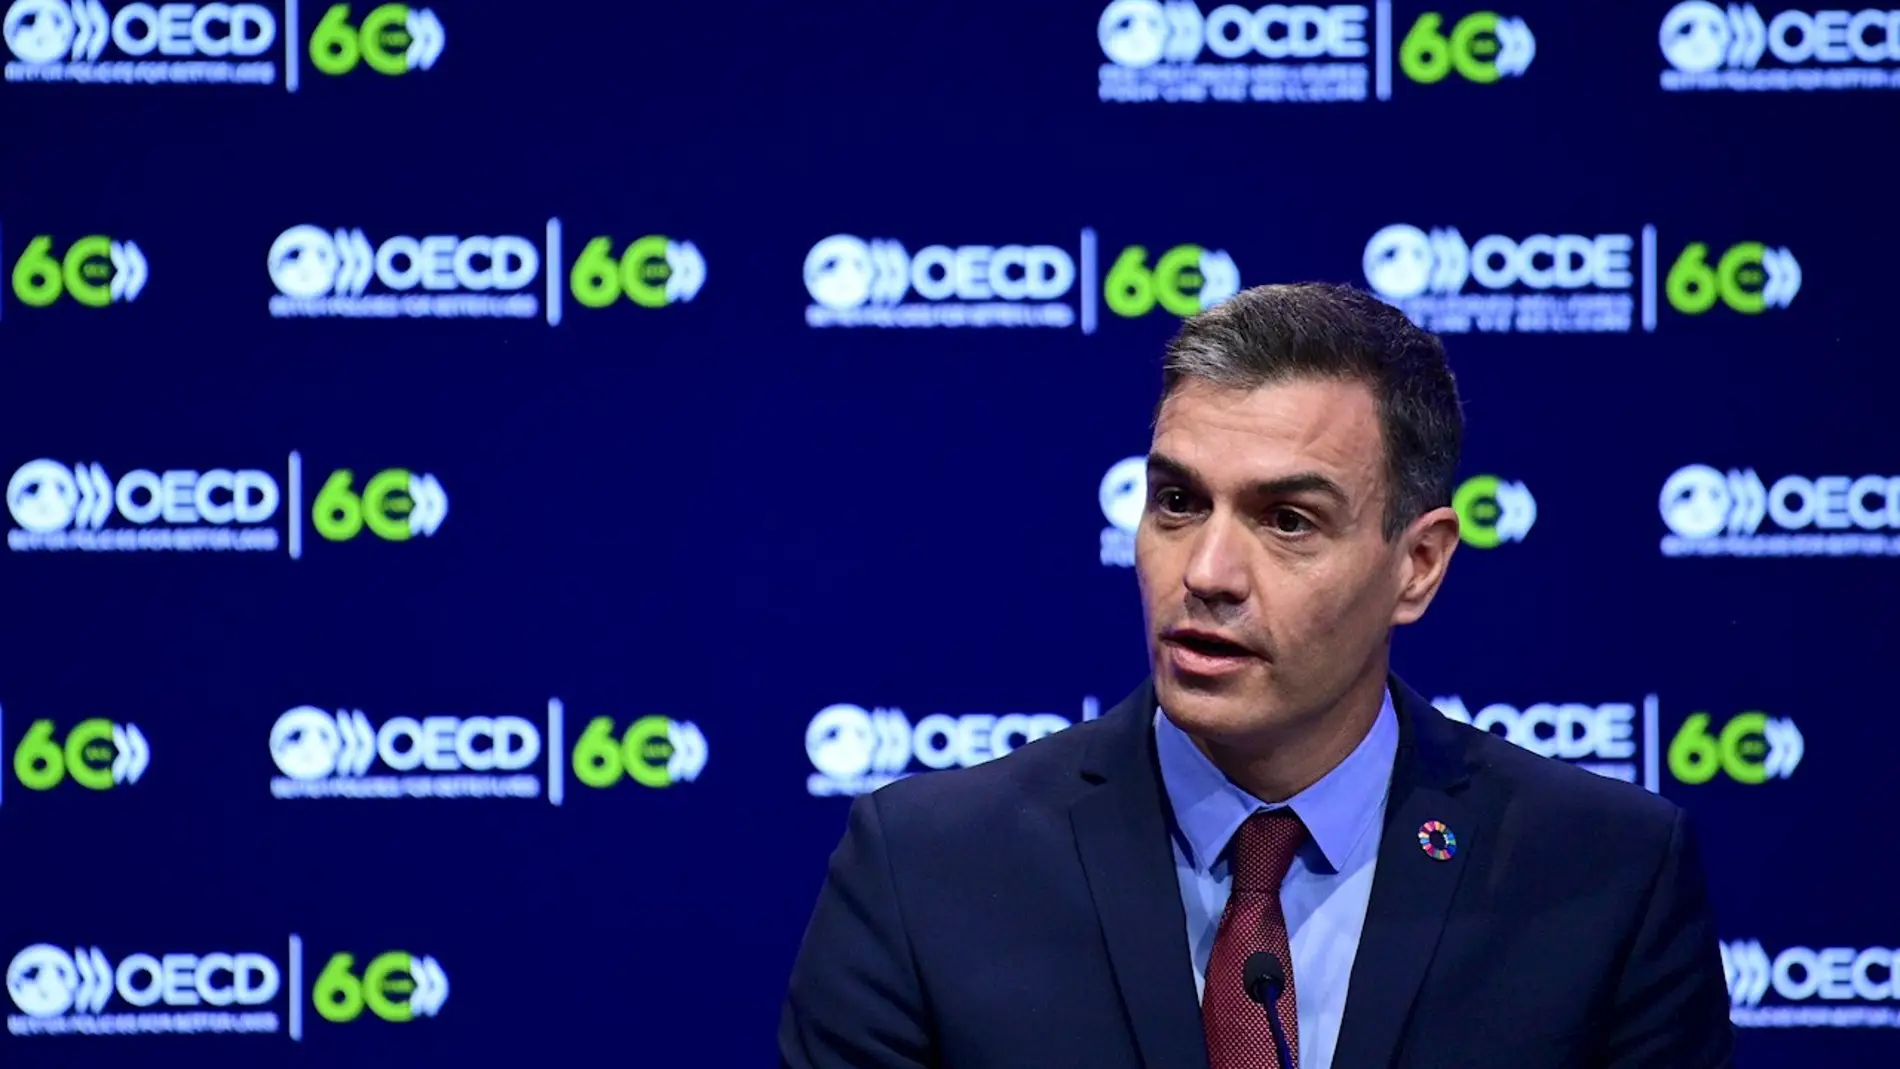 Pedro Sánchez, en la jornada de inauguración del 60 aniversario de la OCDE